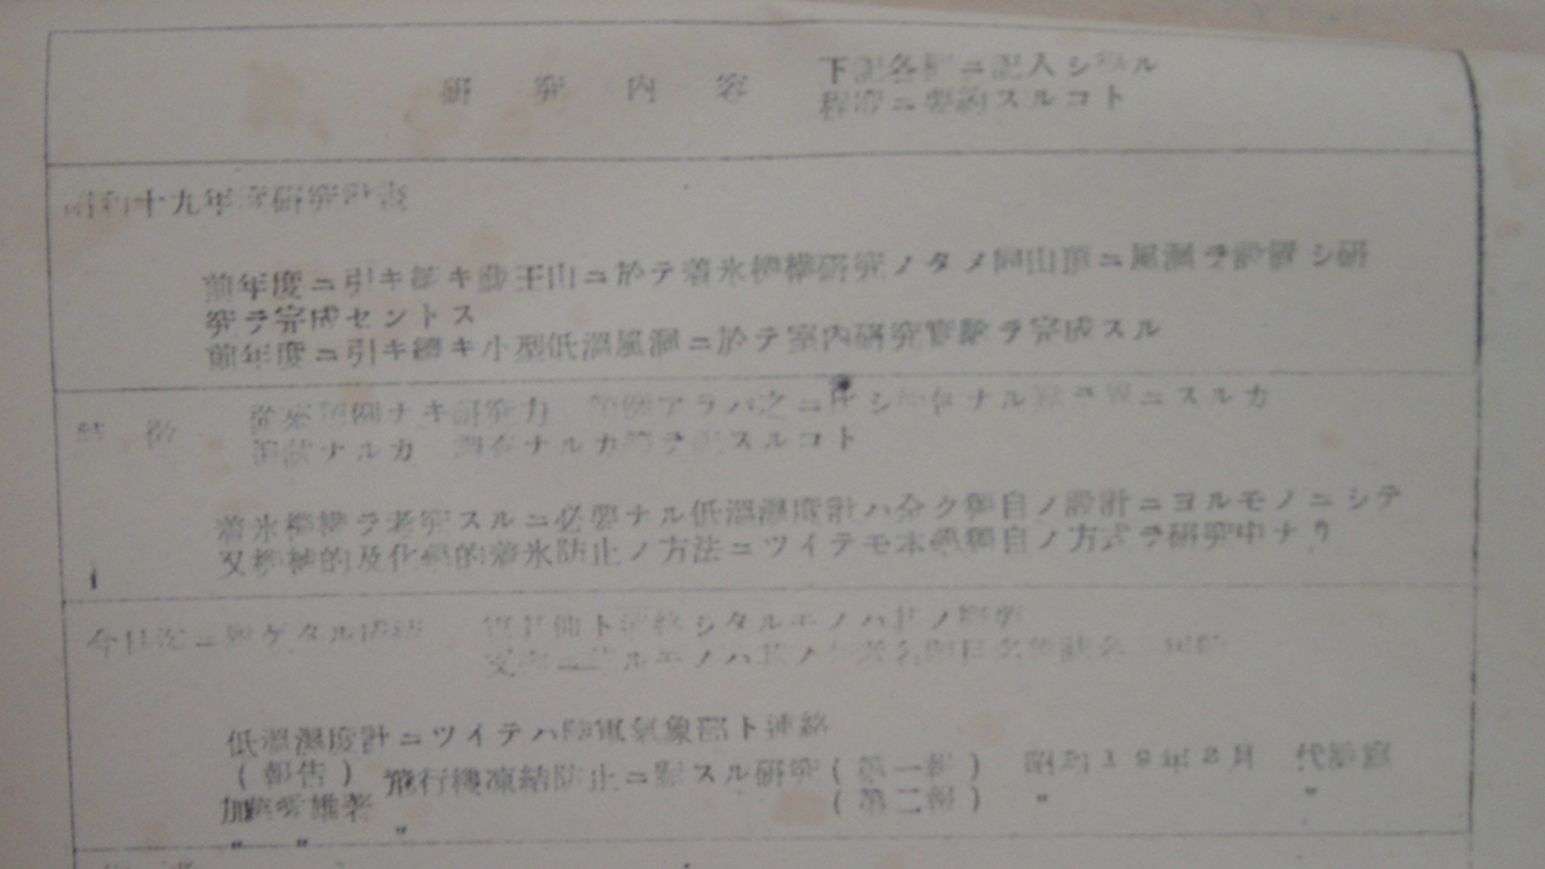 図４　昭和19年度の科研費申請書（大久保準三文書：東北大学史料館所蔵）の画像